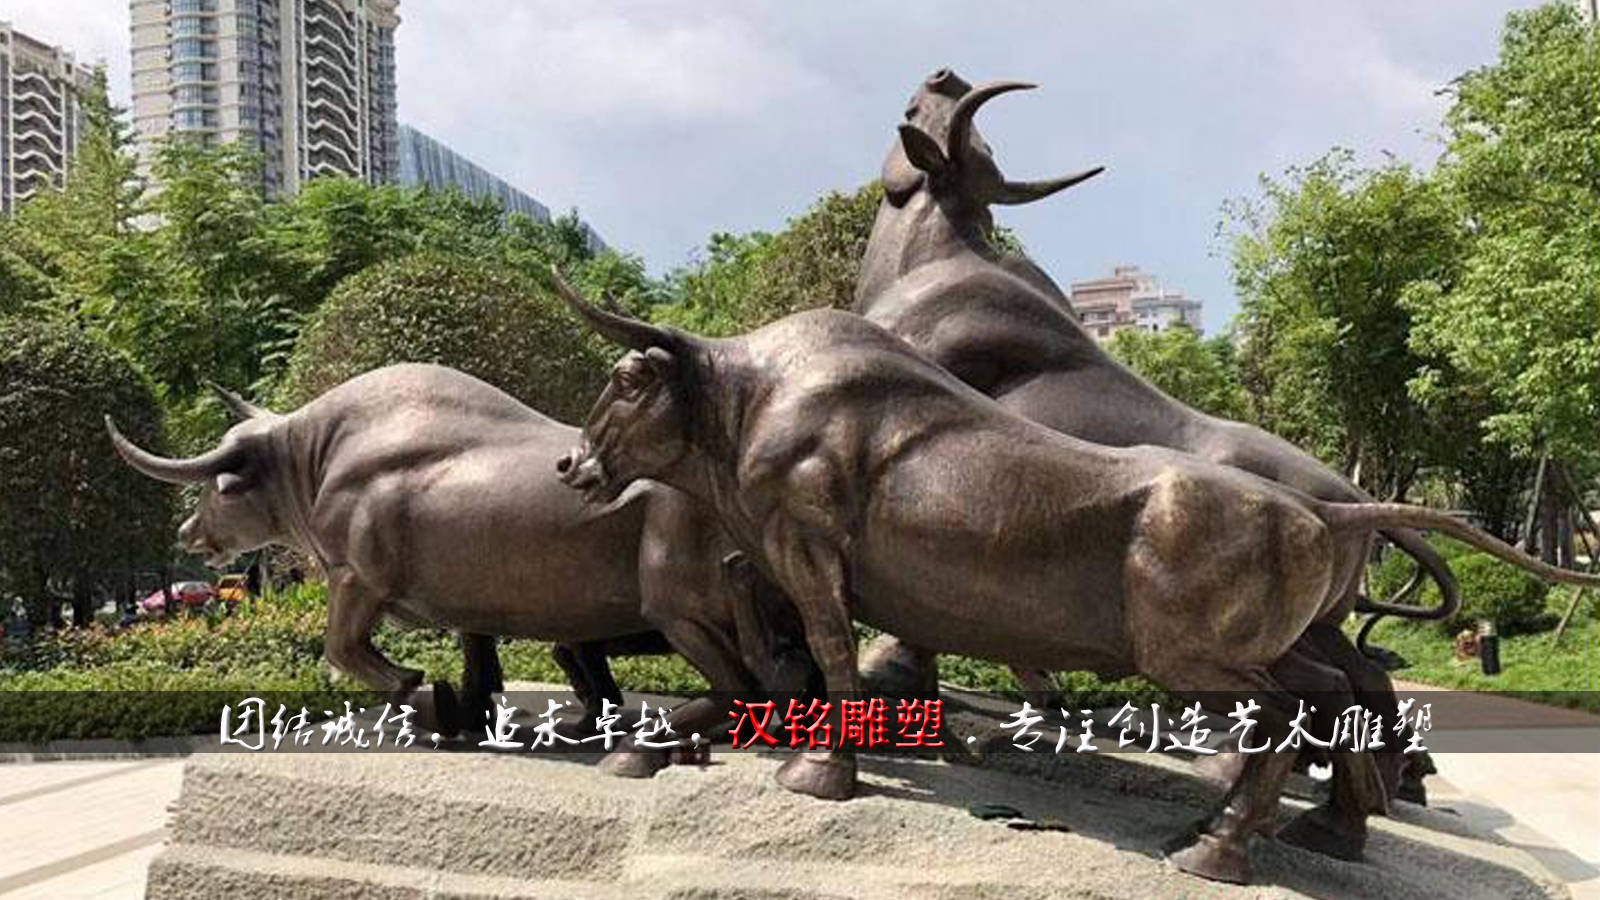 三牛精神雕塑 拓荒牛雕塑 孺子牛雕塑 老黄牛雕塑 玻璃钢雕塑 汉铭